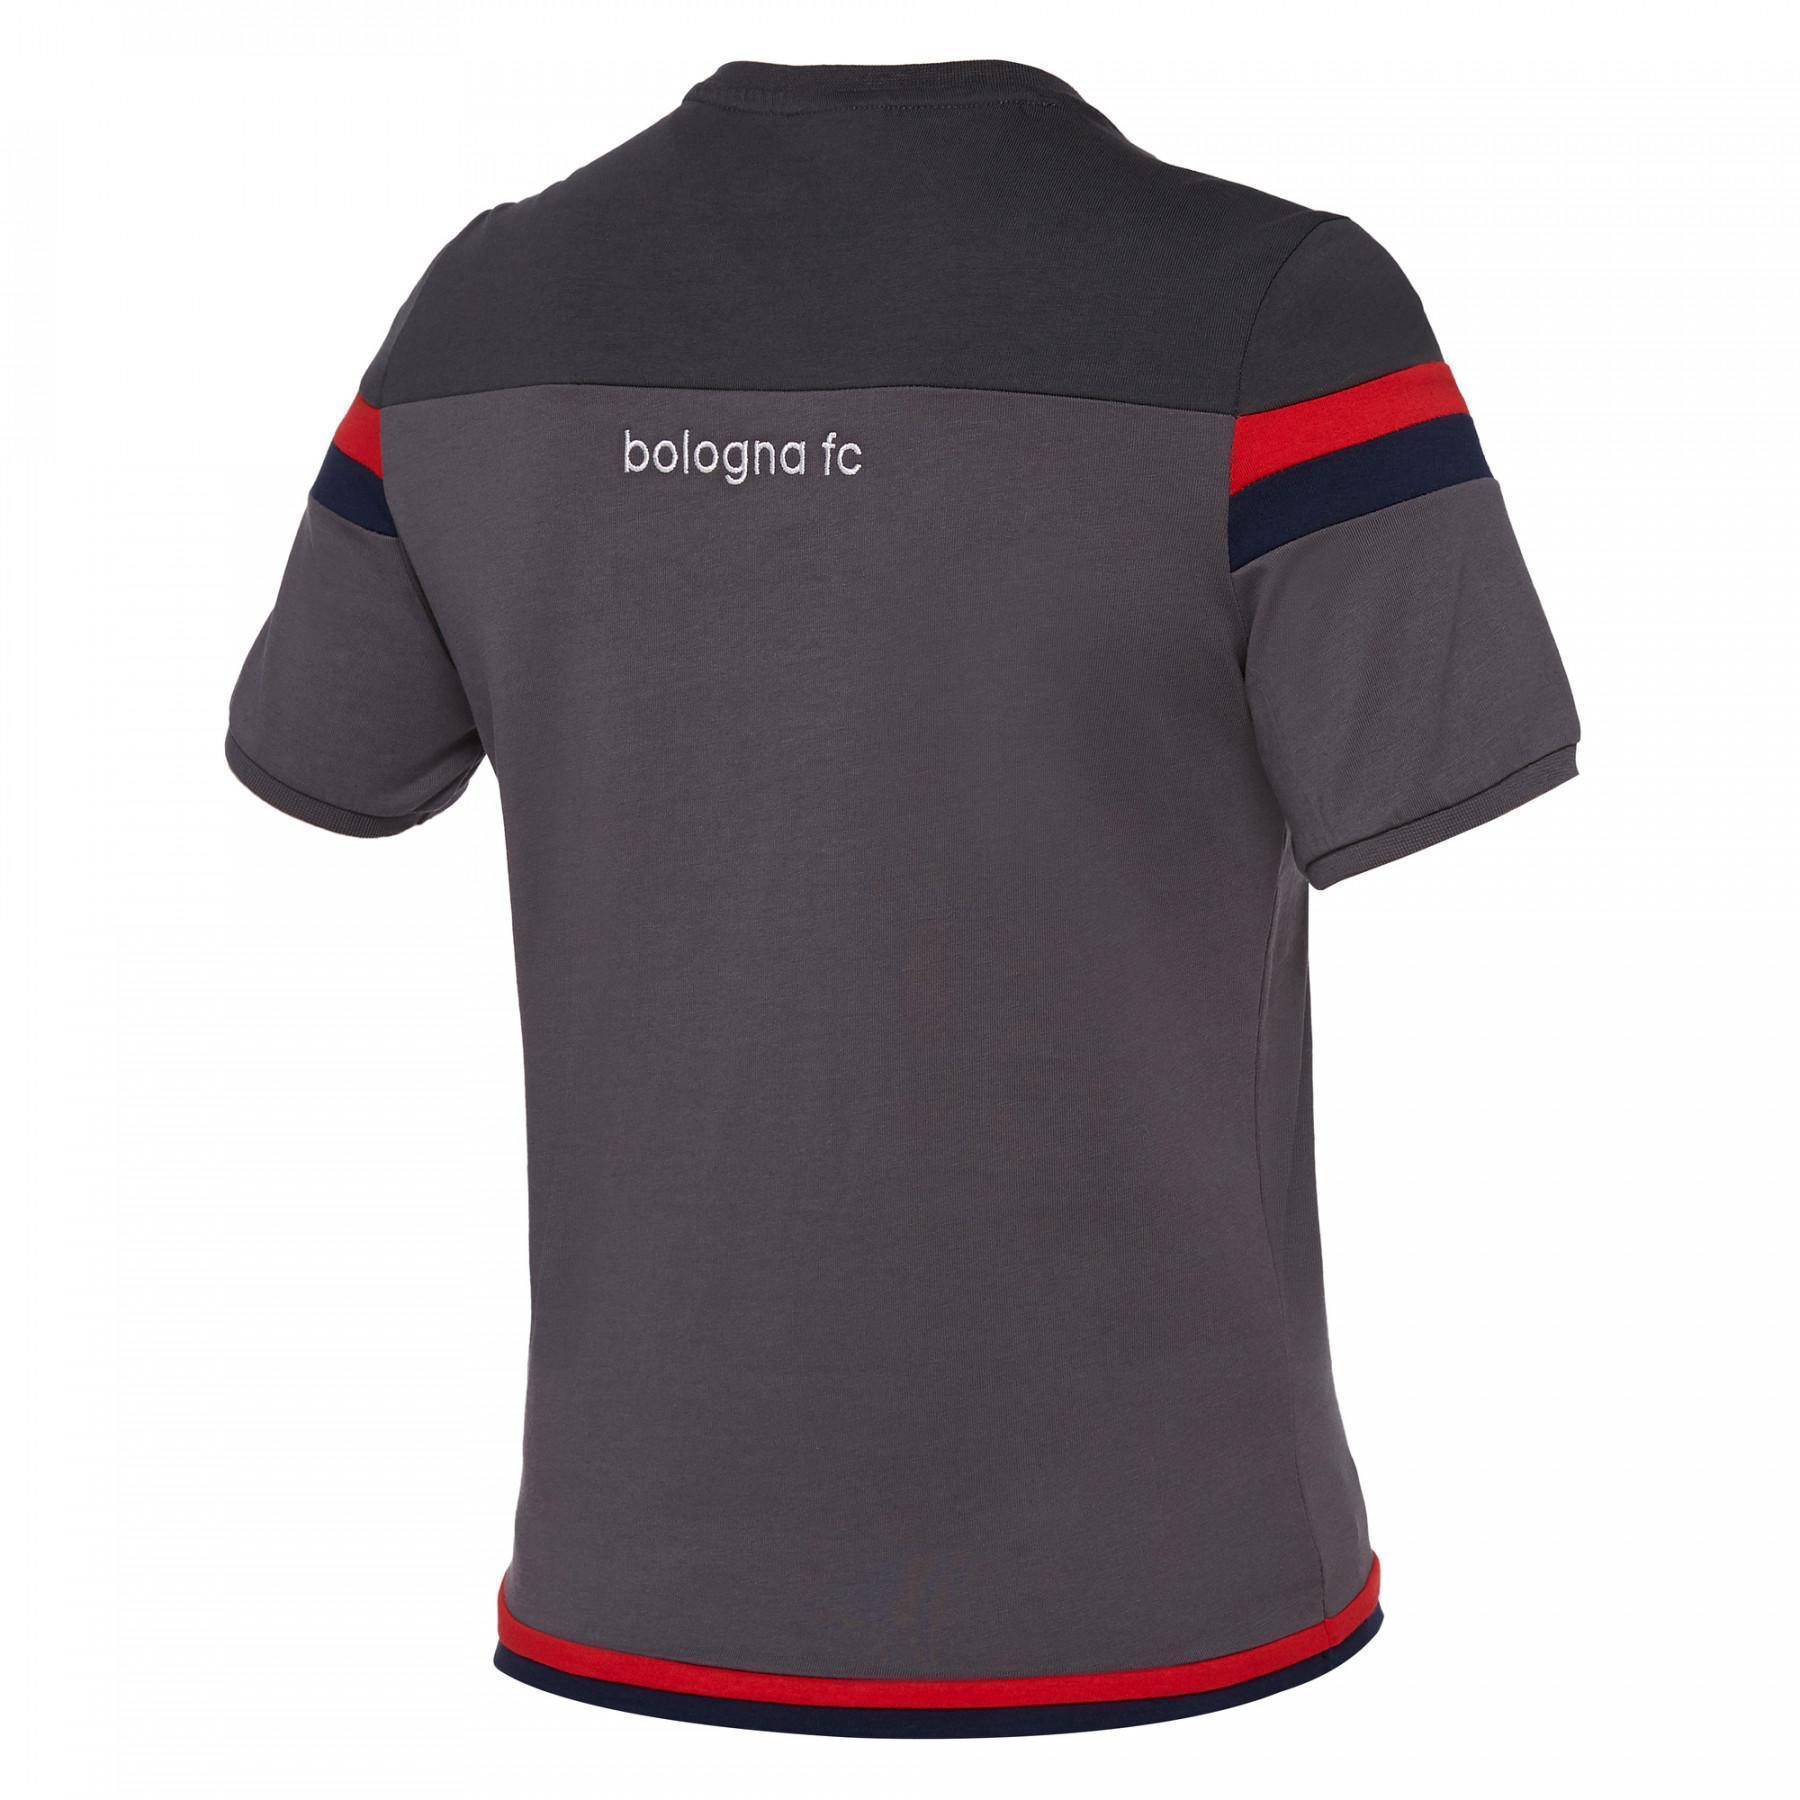 Kinder-T-Shirt Bologne 2017-2018